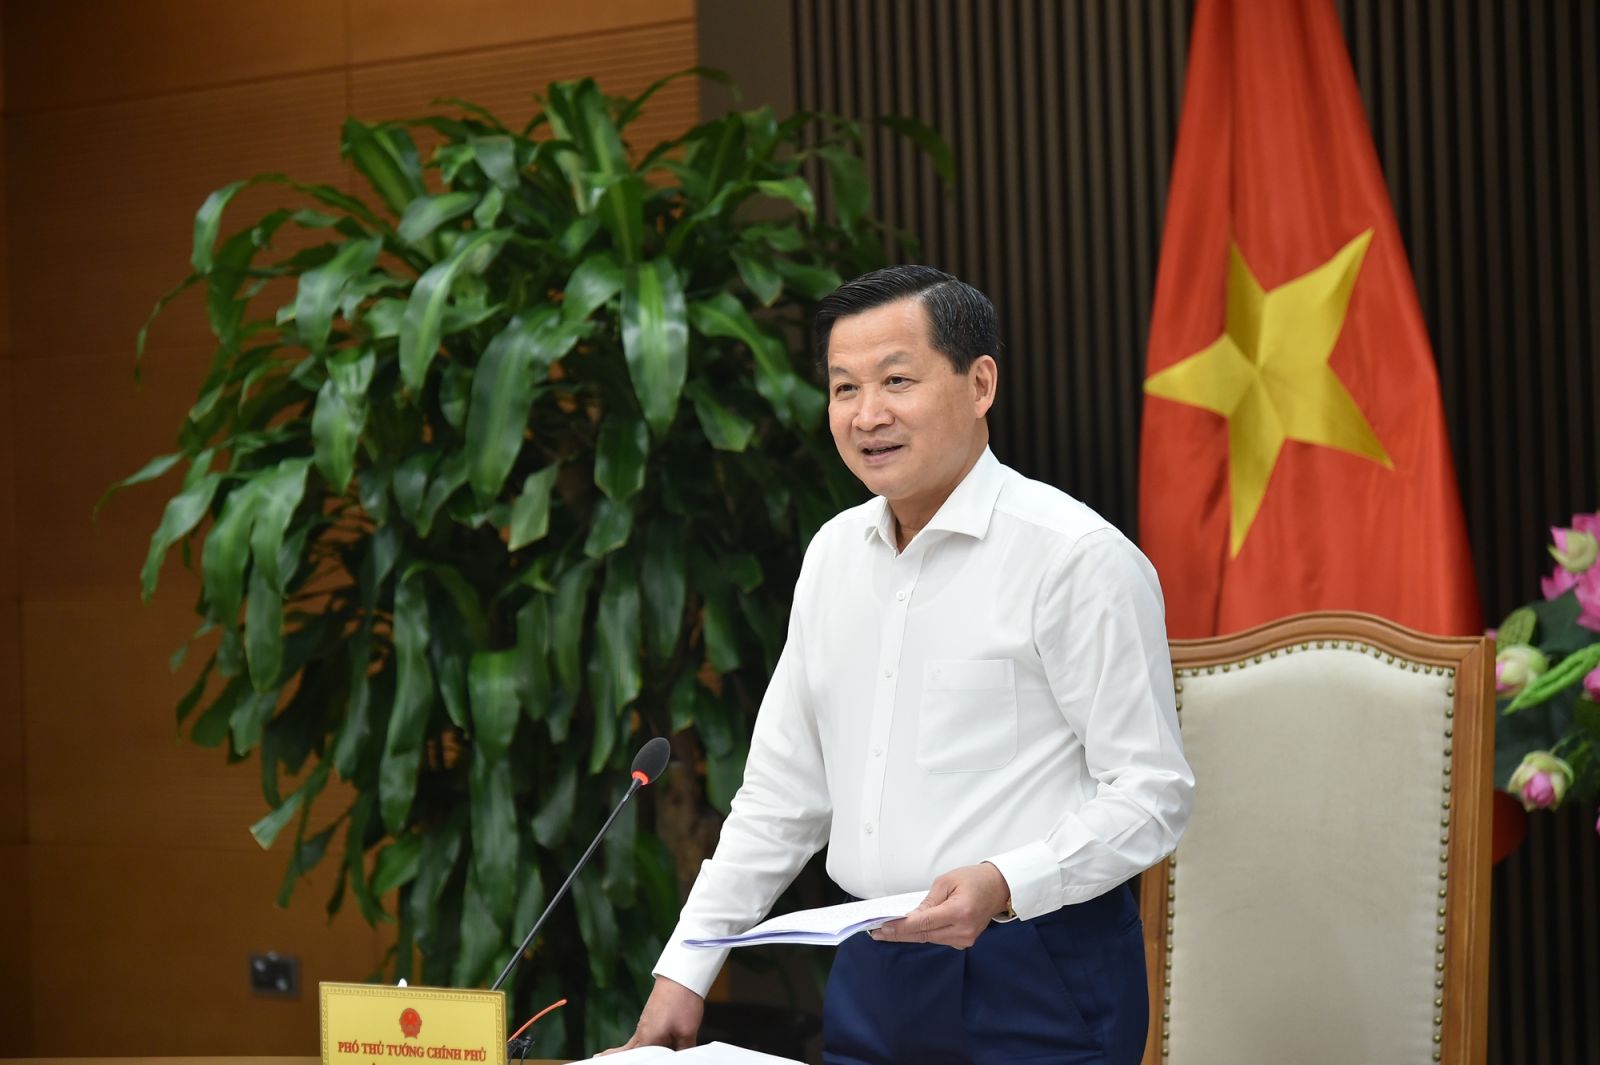 Phó Thủ tướng Lê Minh Khái: Phải thiết lập mặt bằng lãi suất huy động hợp lý thì lãi suất cho vay mới phù hợp. Doanh nghiệp phát triển ngân hàng mới phát triển. (Ảnh: VGP/Quang Thương)